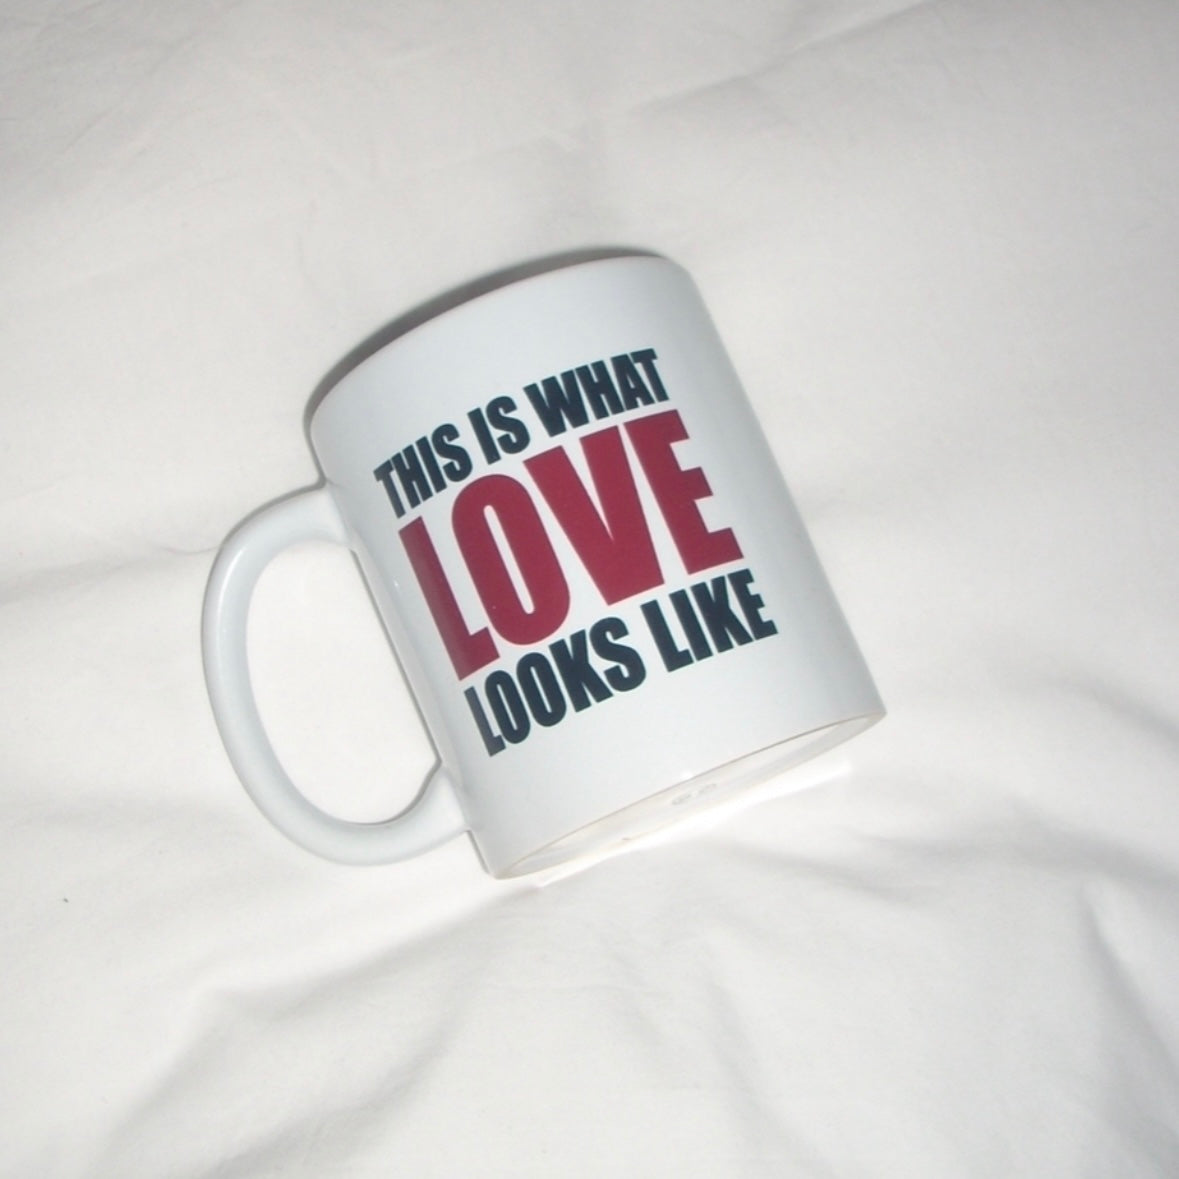 love – mug